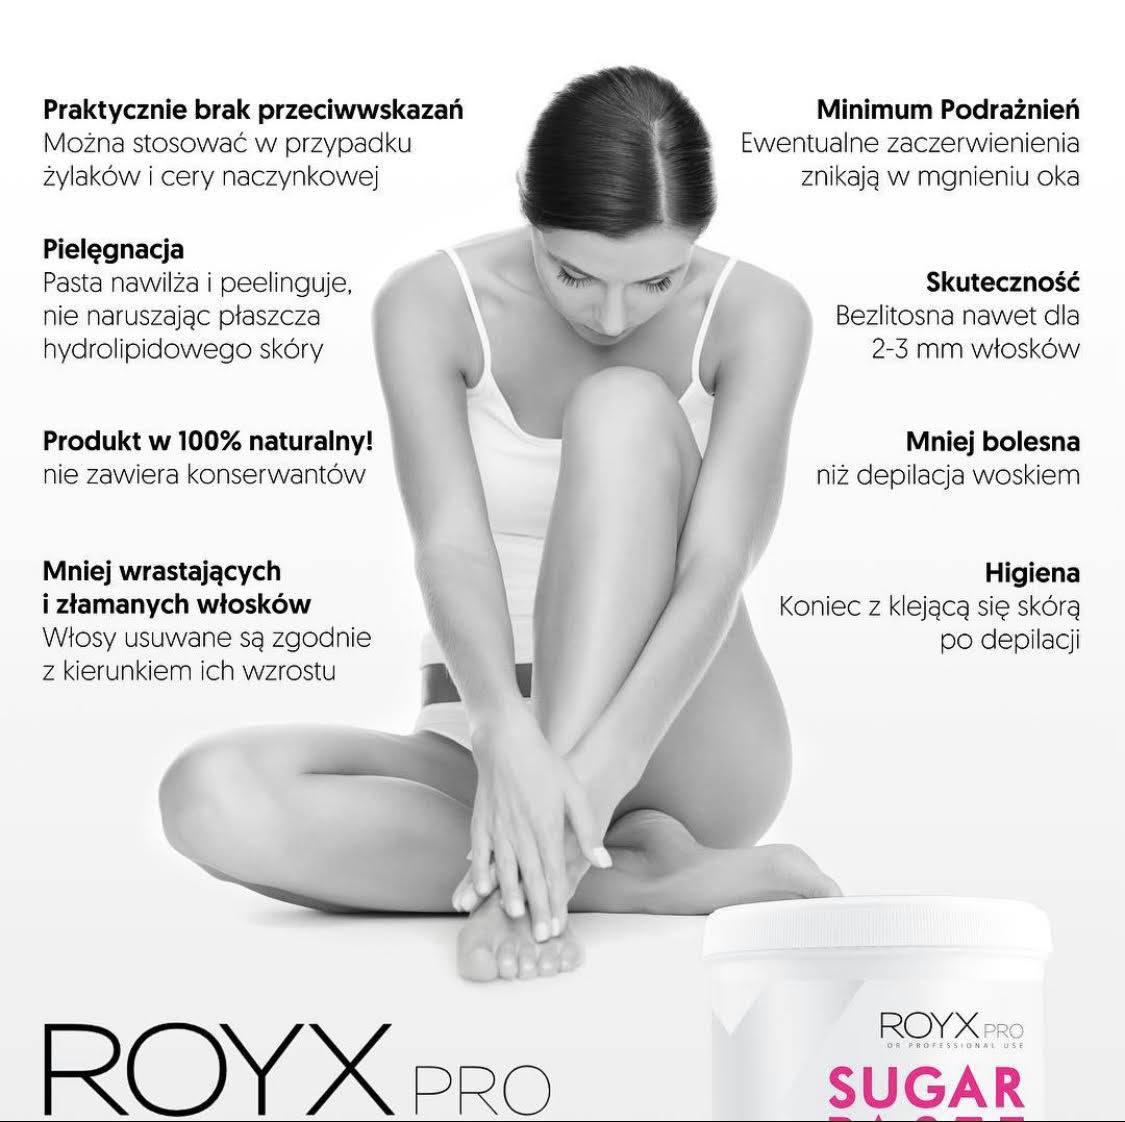 Royx Pro depilacja pastą cukrową